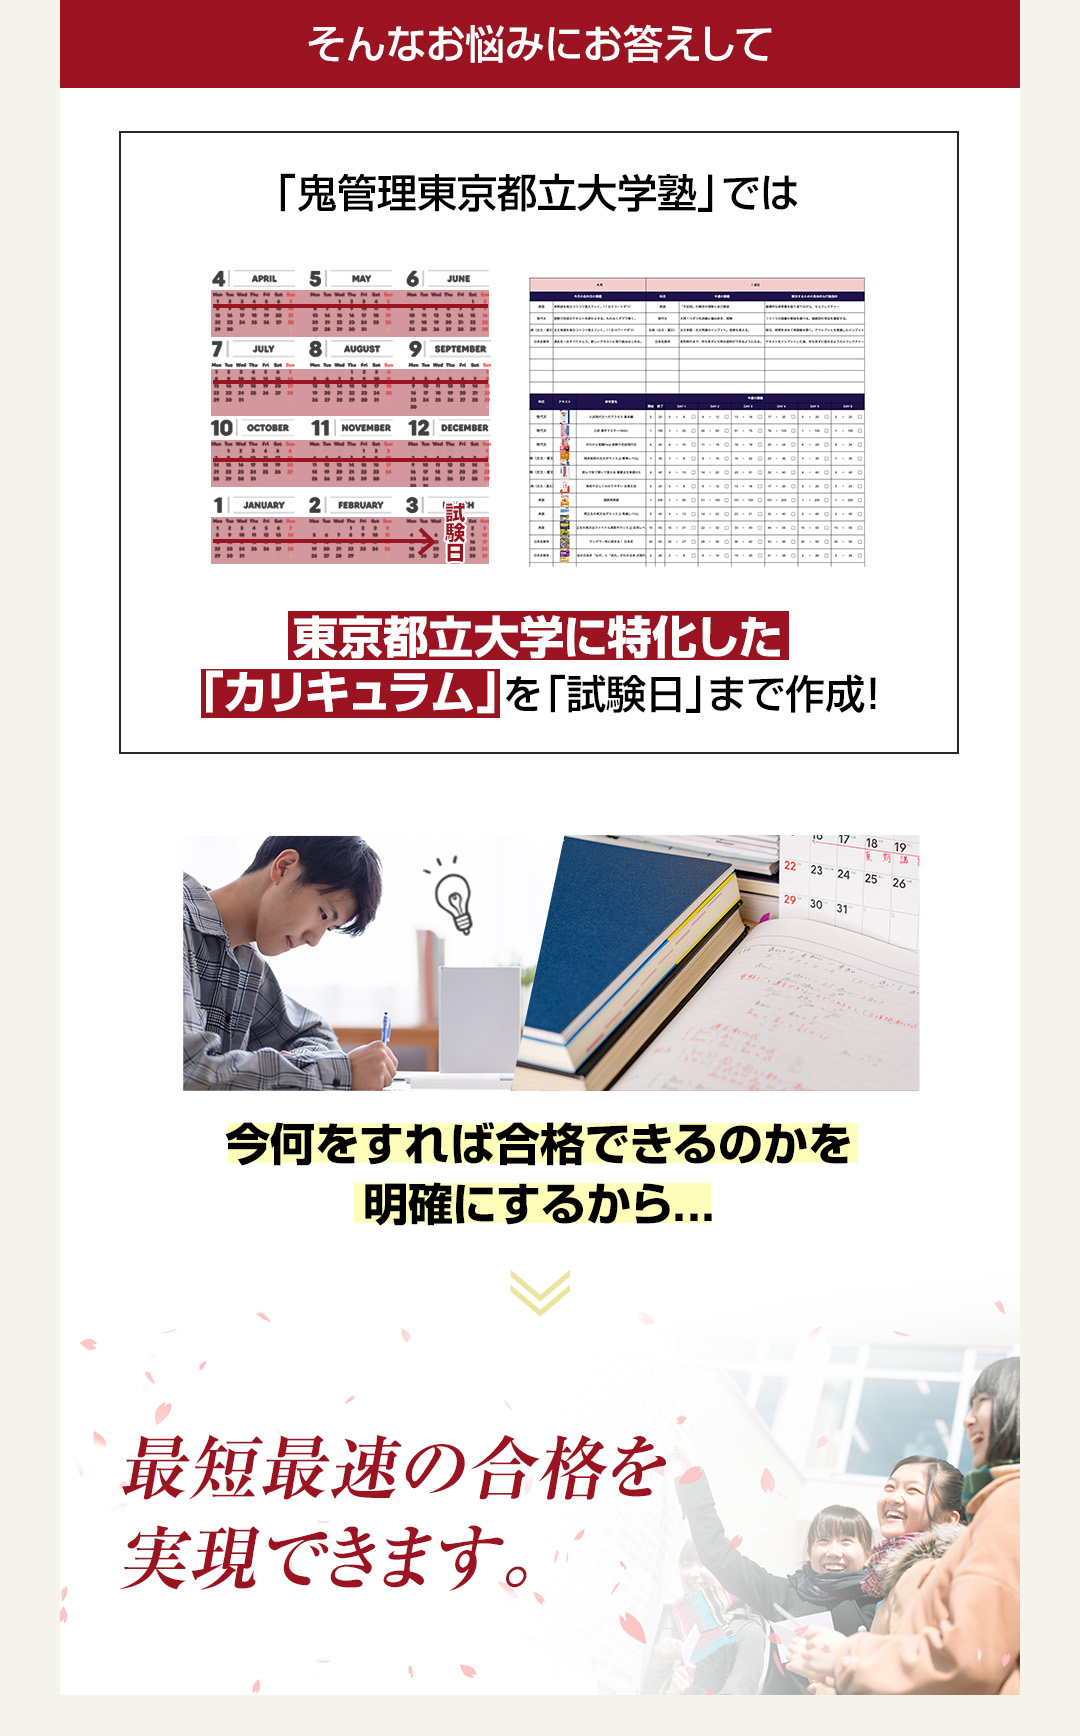 「鬼管理東京都立大学塾」では東京都立大学に特化した「カリキュラム」を「試験日」まで作成